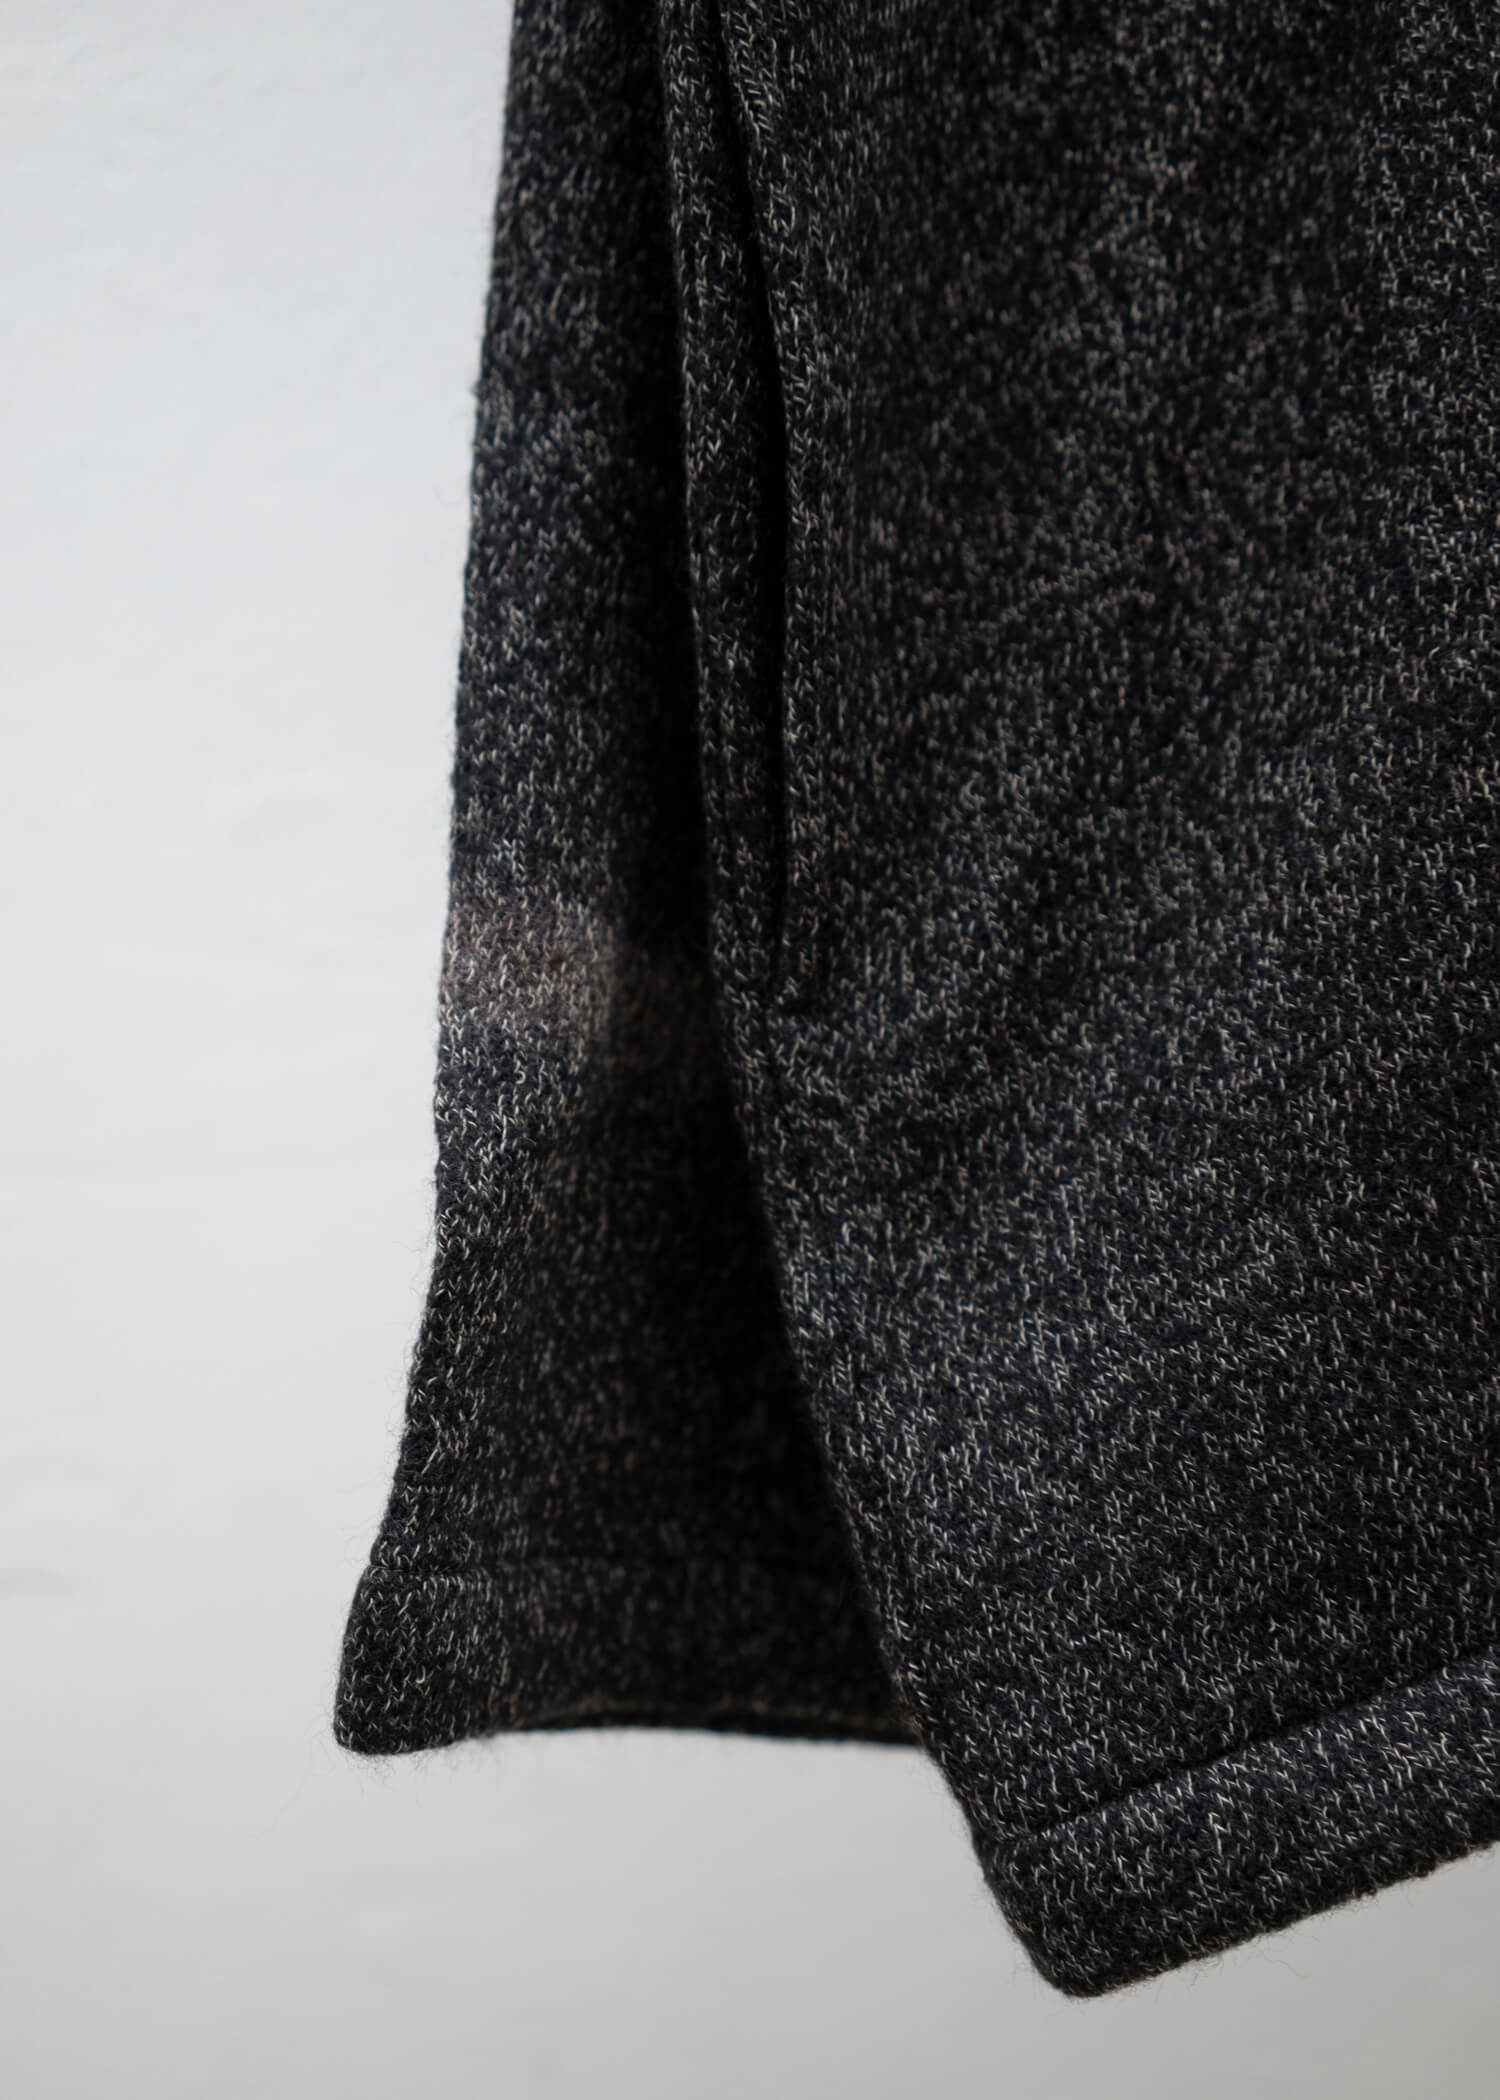 SUZUSAN Wool Cotton Jersey Front Button Cardigan Black - Muddy Brown